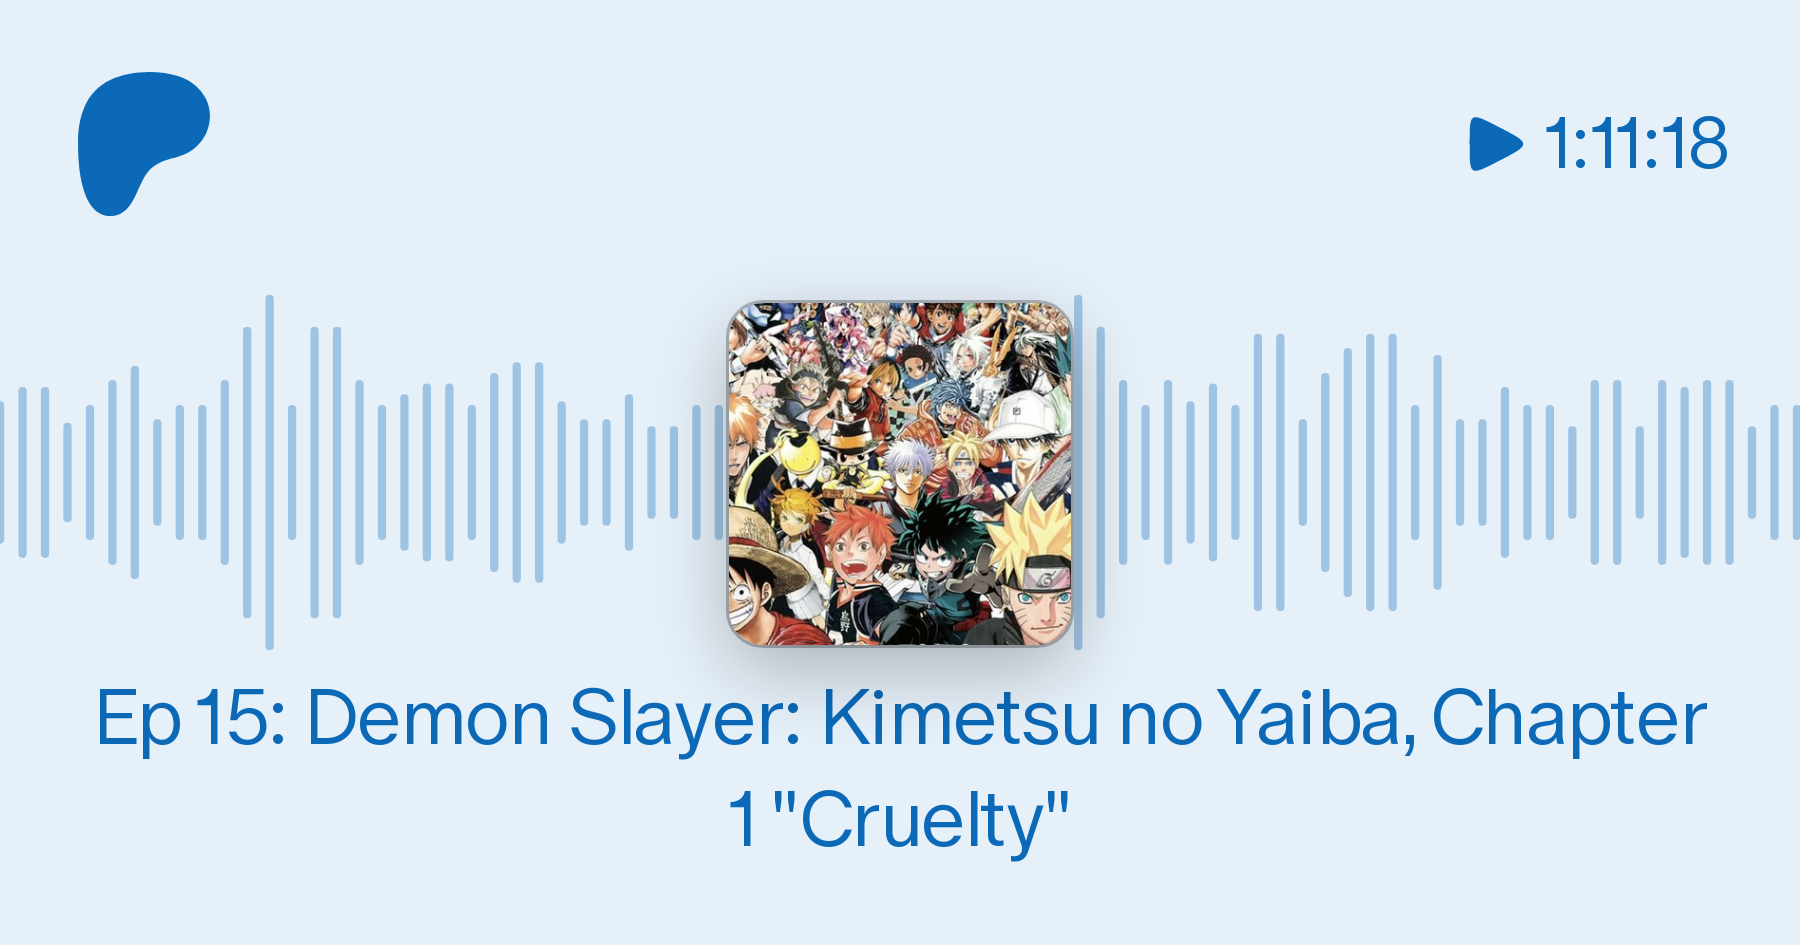 Ep 15: Demon Slayer: Kimetsu no Yaiba, Chapter 1 Cruelty